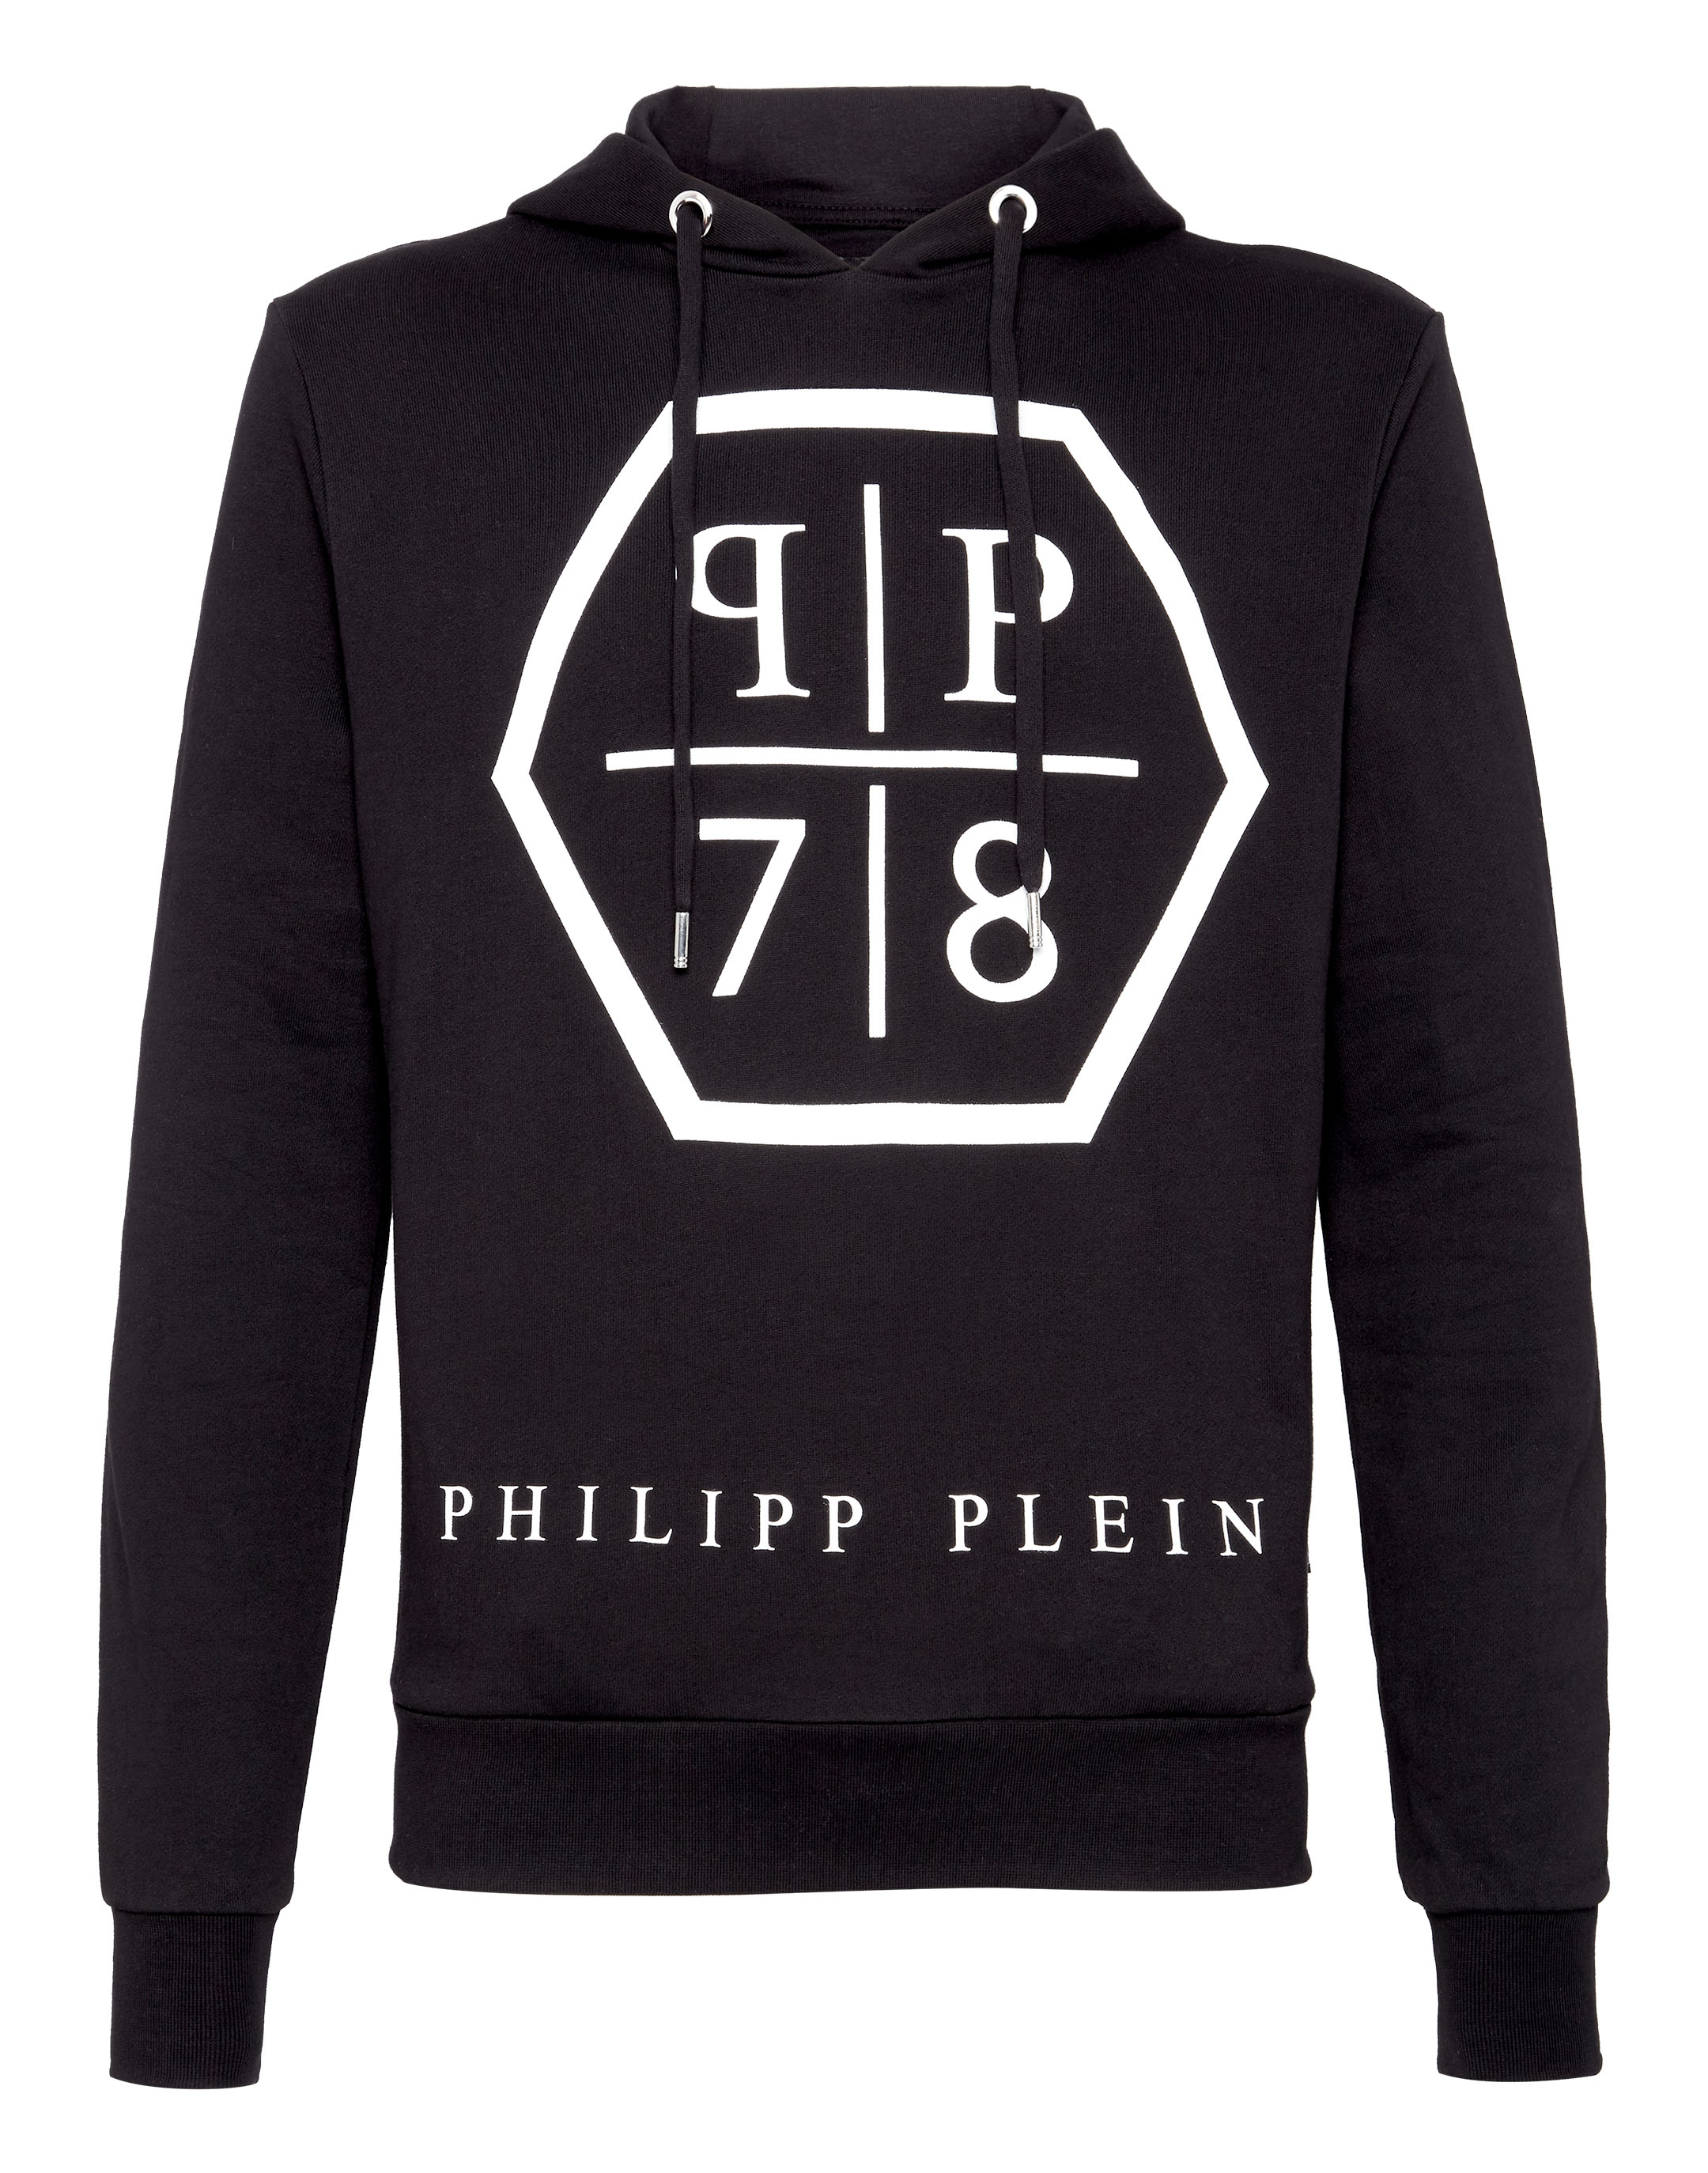 Hoodie sweatshirt PP | Philipp Plein Outlet